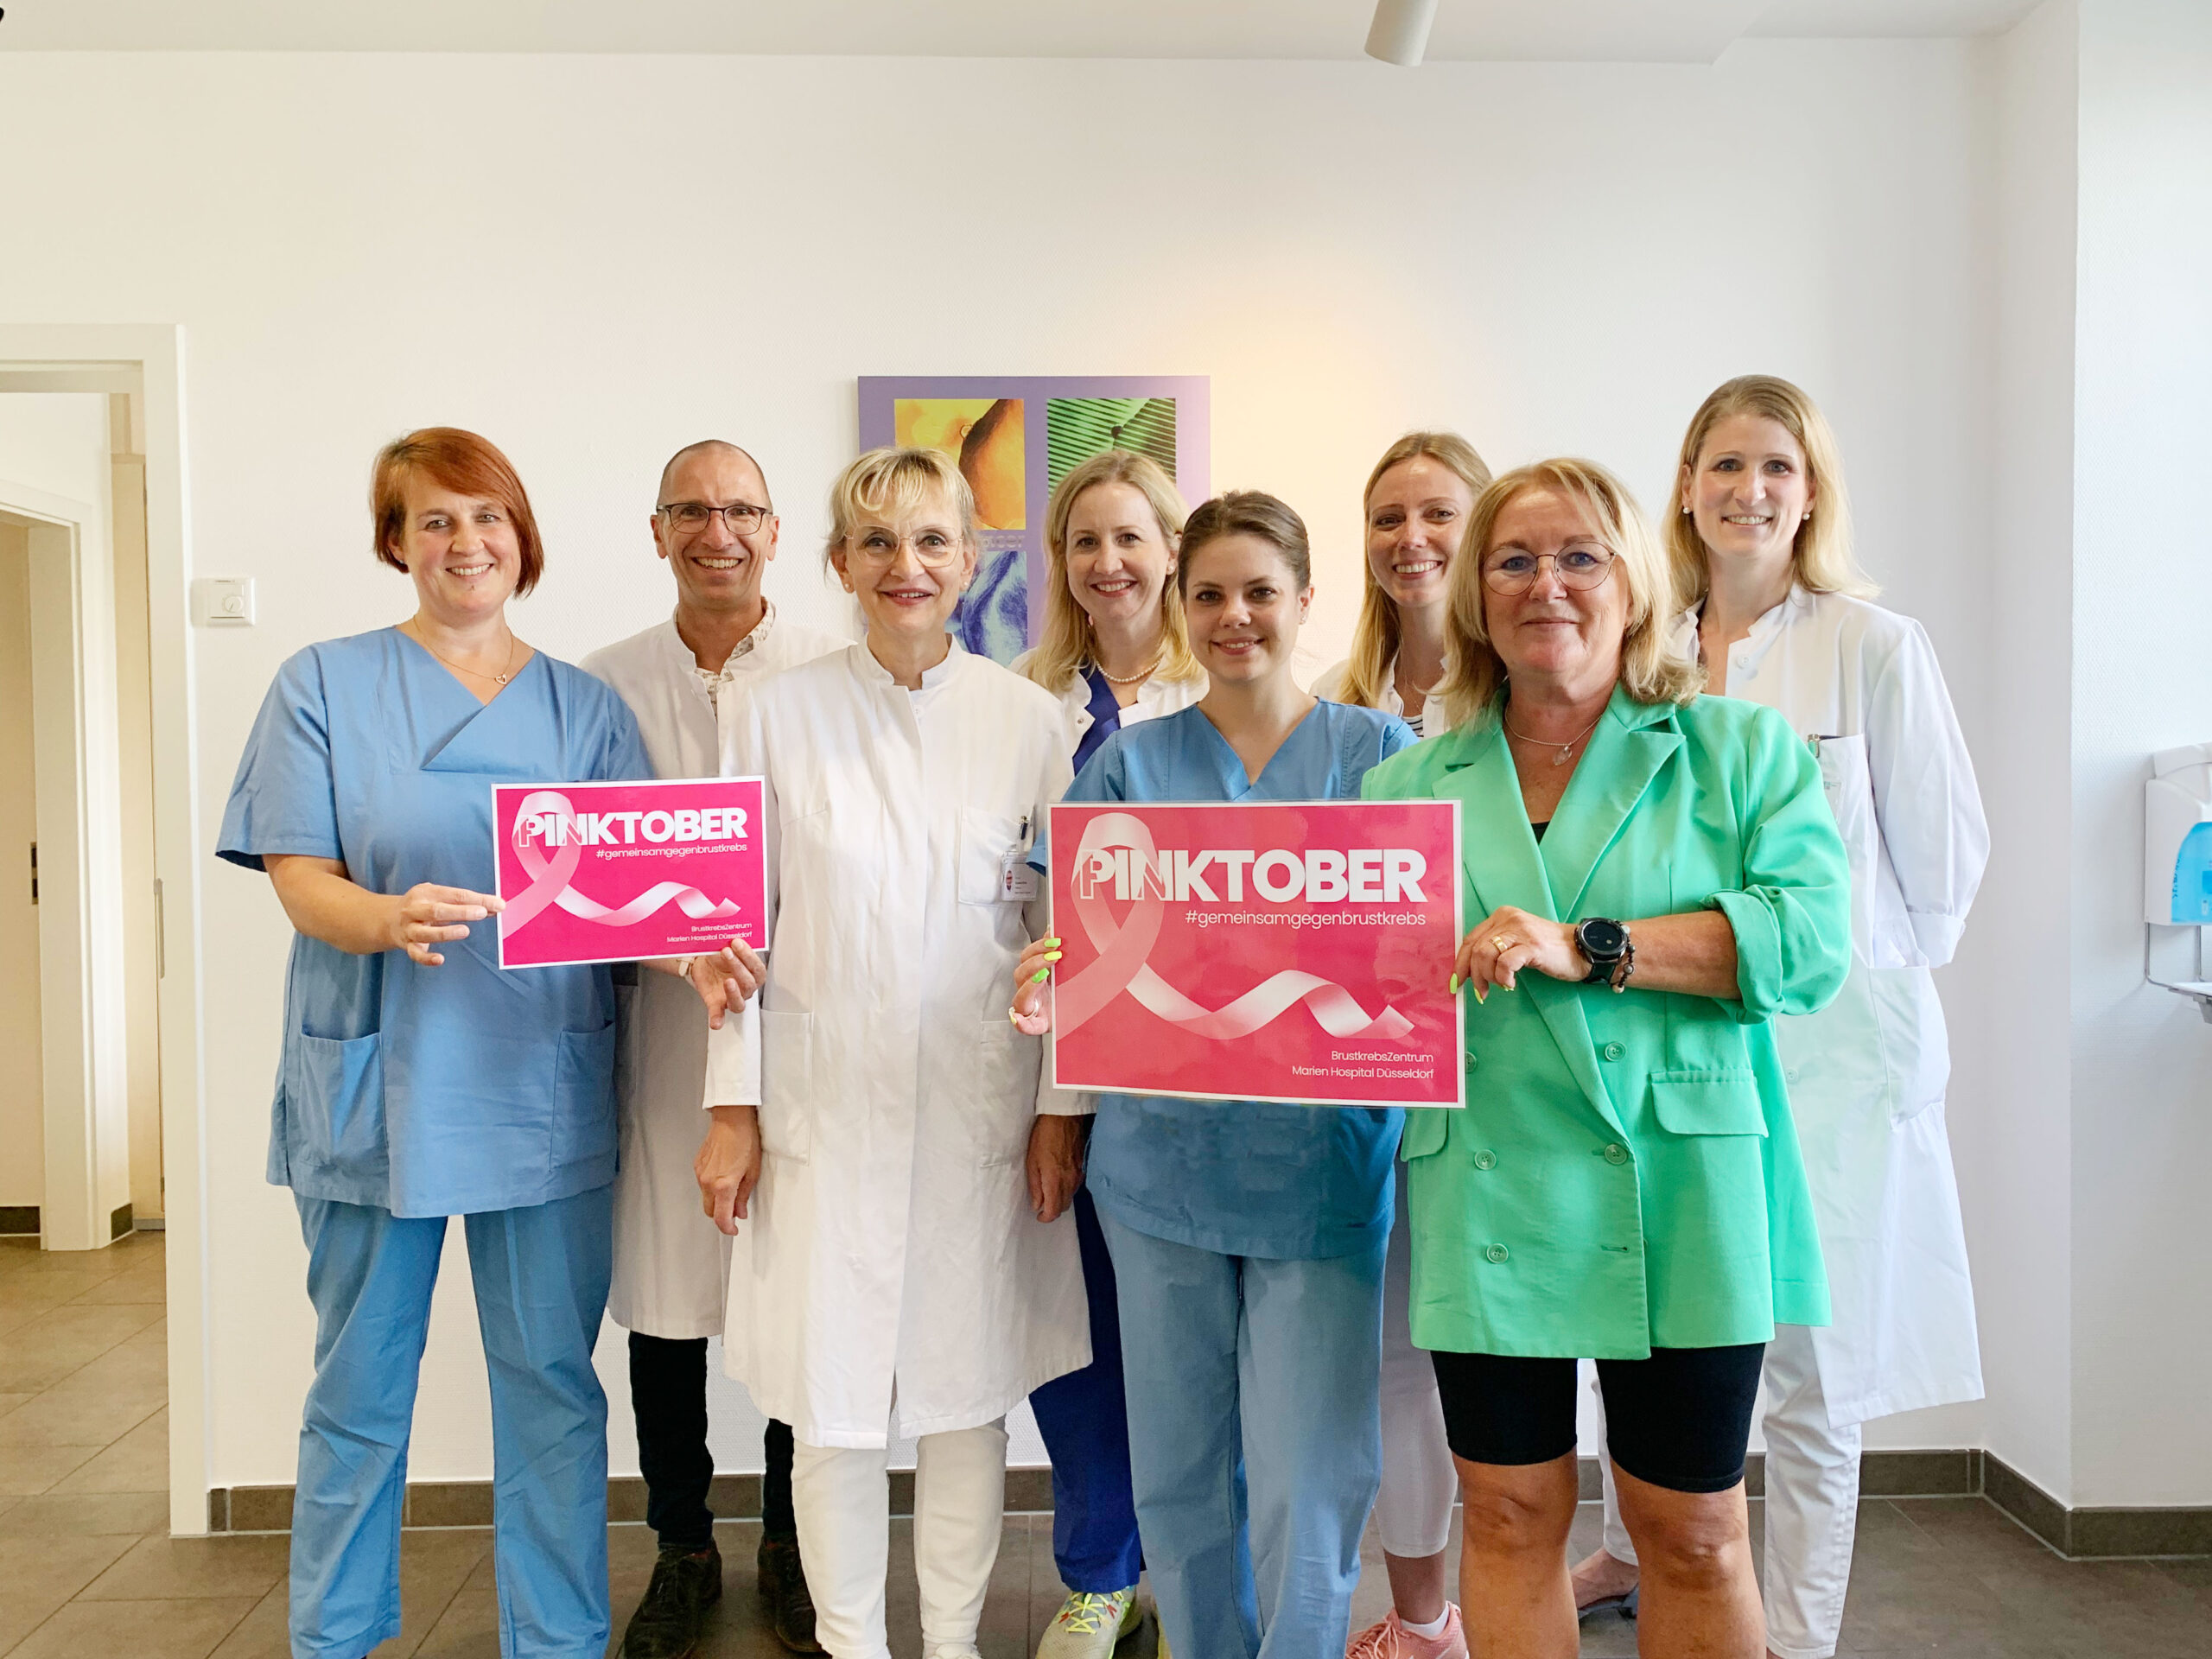 Team des Brustkrebszentrum mit Pinktober Plakat